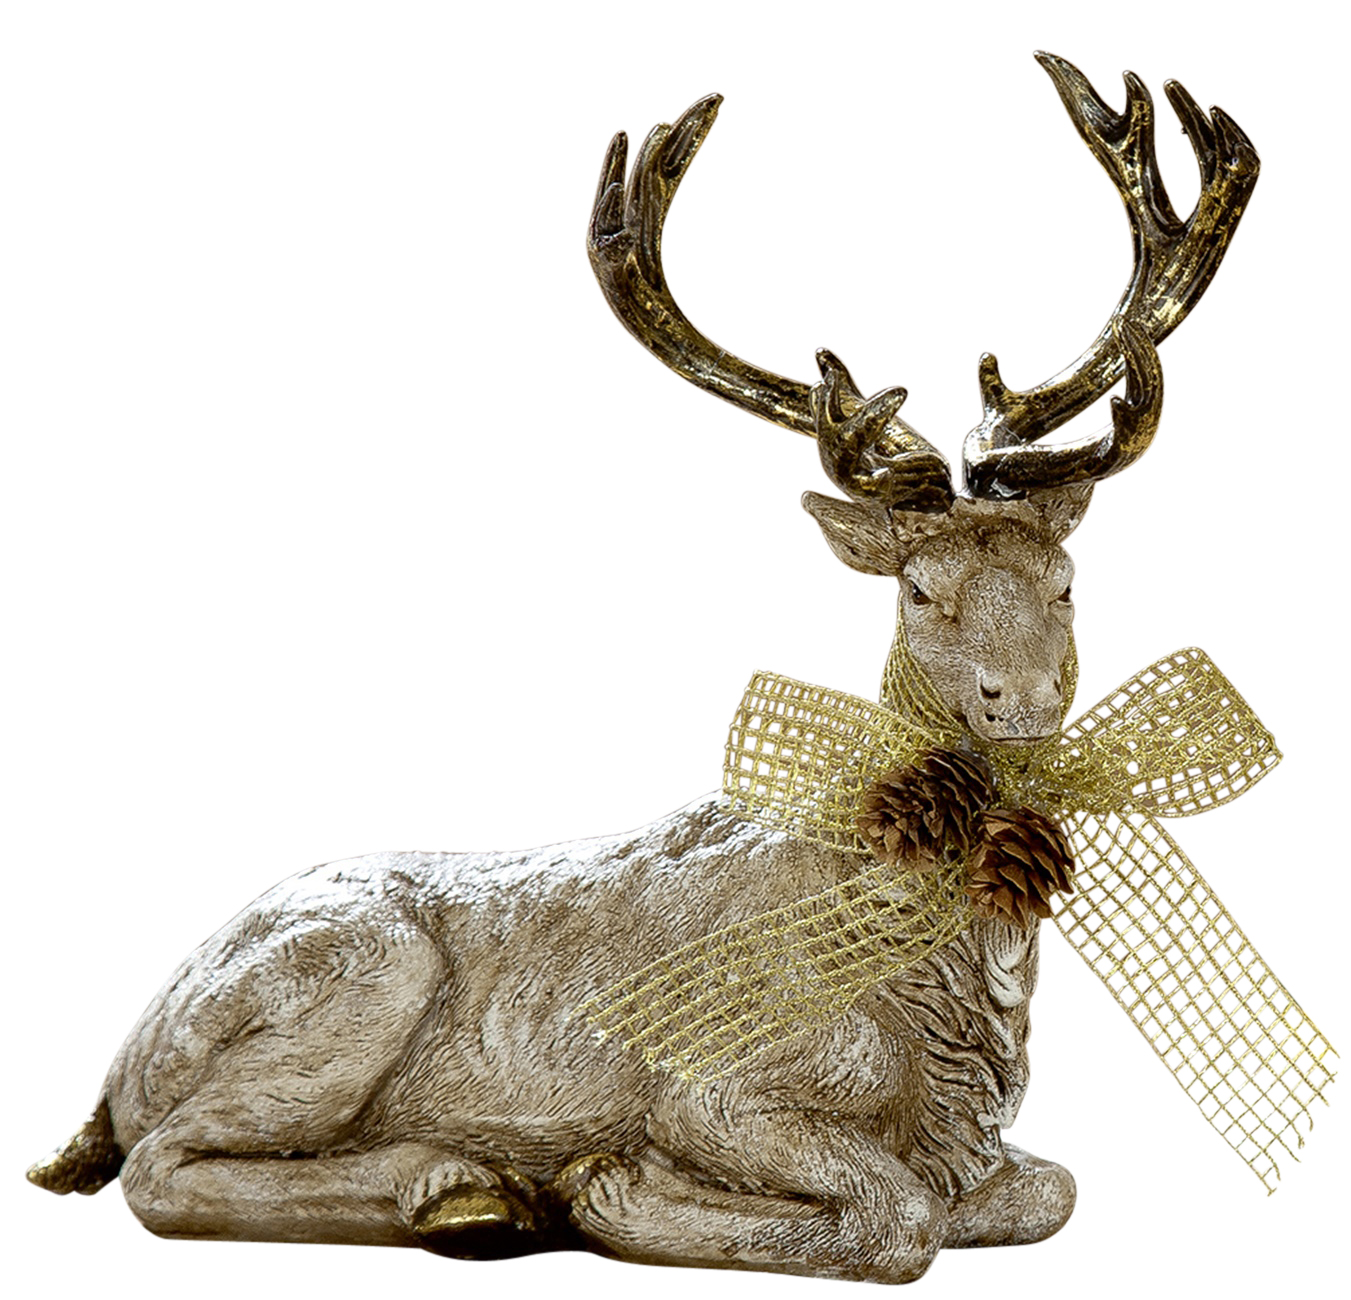 postenmarkt-shop.de - für antike Weihnachtsdeko Innen Bock Tier-Keramik-Figur Goldener Reh natürlich Rehkitz Hirsch Außen 22x20cm Elch Rentierdeko beige gold